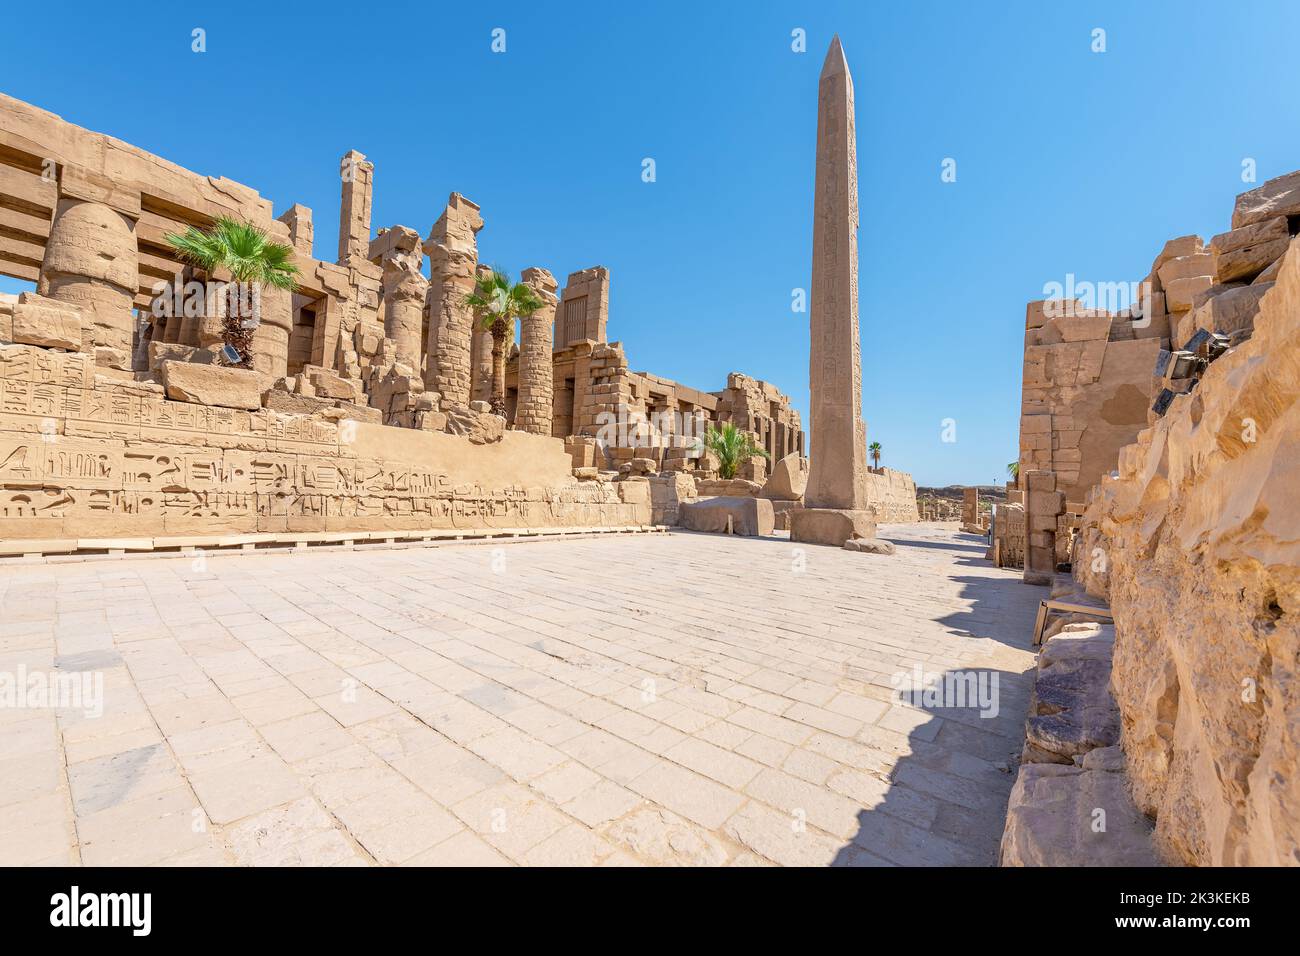 A massive obelisk in the Karnak Temple, Luxor, Egypt Stock Photo